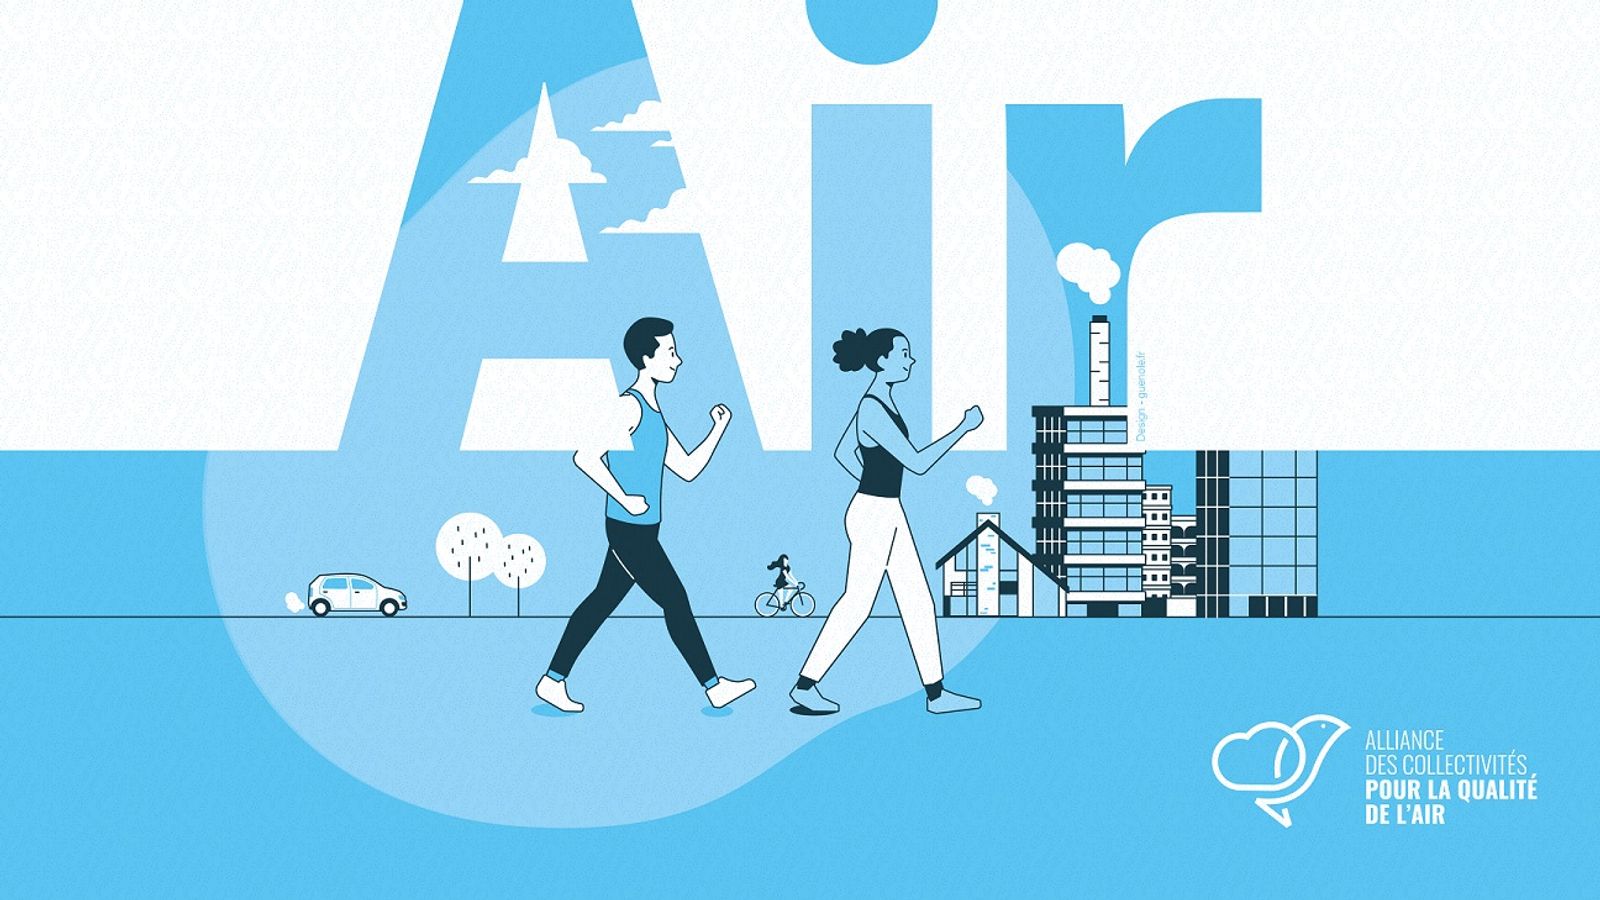 La qualité de l'air : des outils pour sensibiliser et communiquer auprès des citoyens